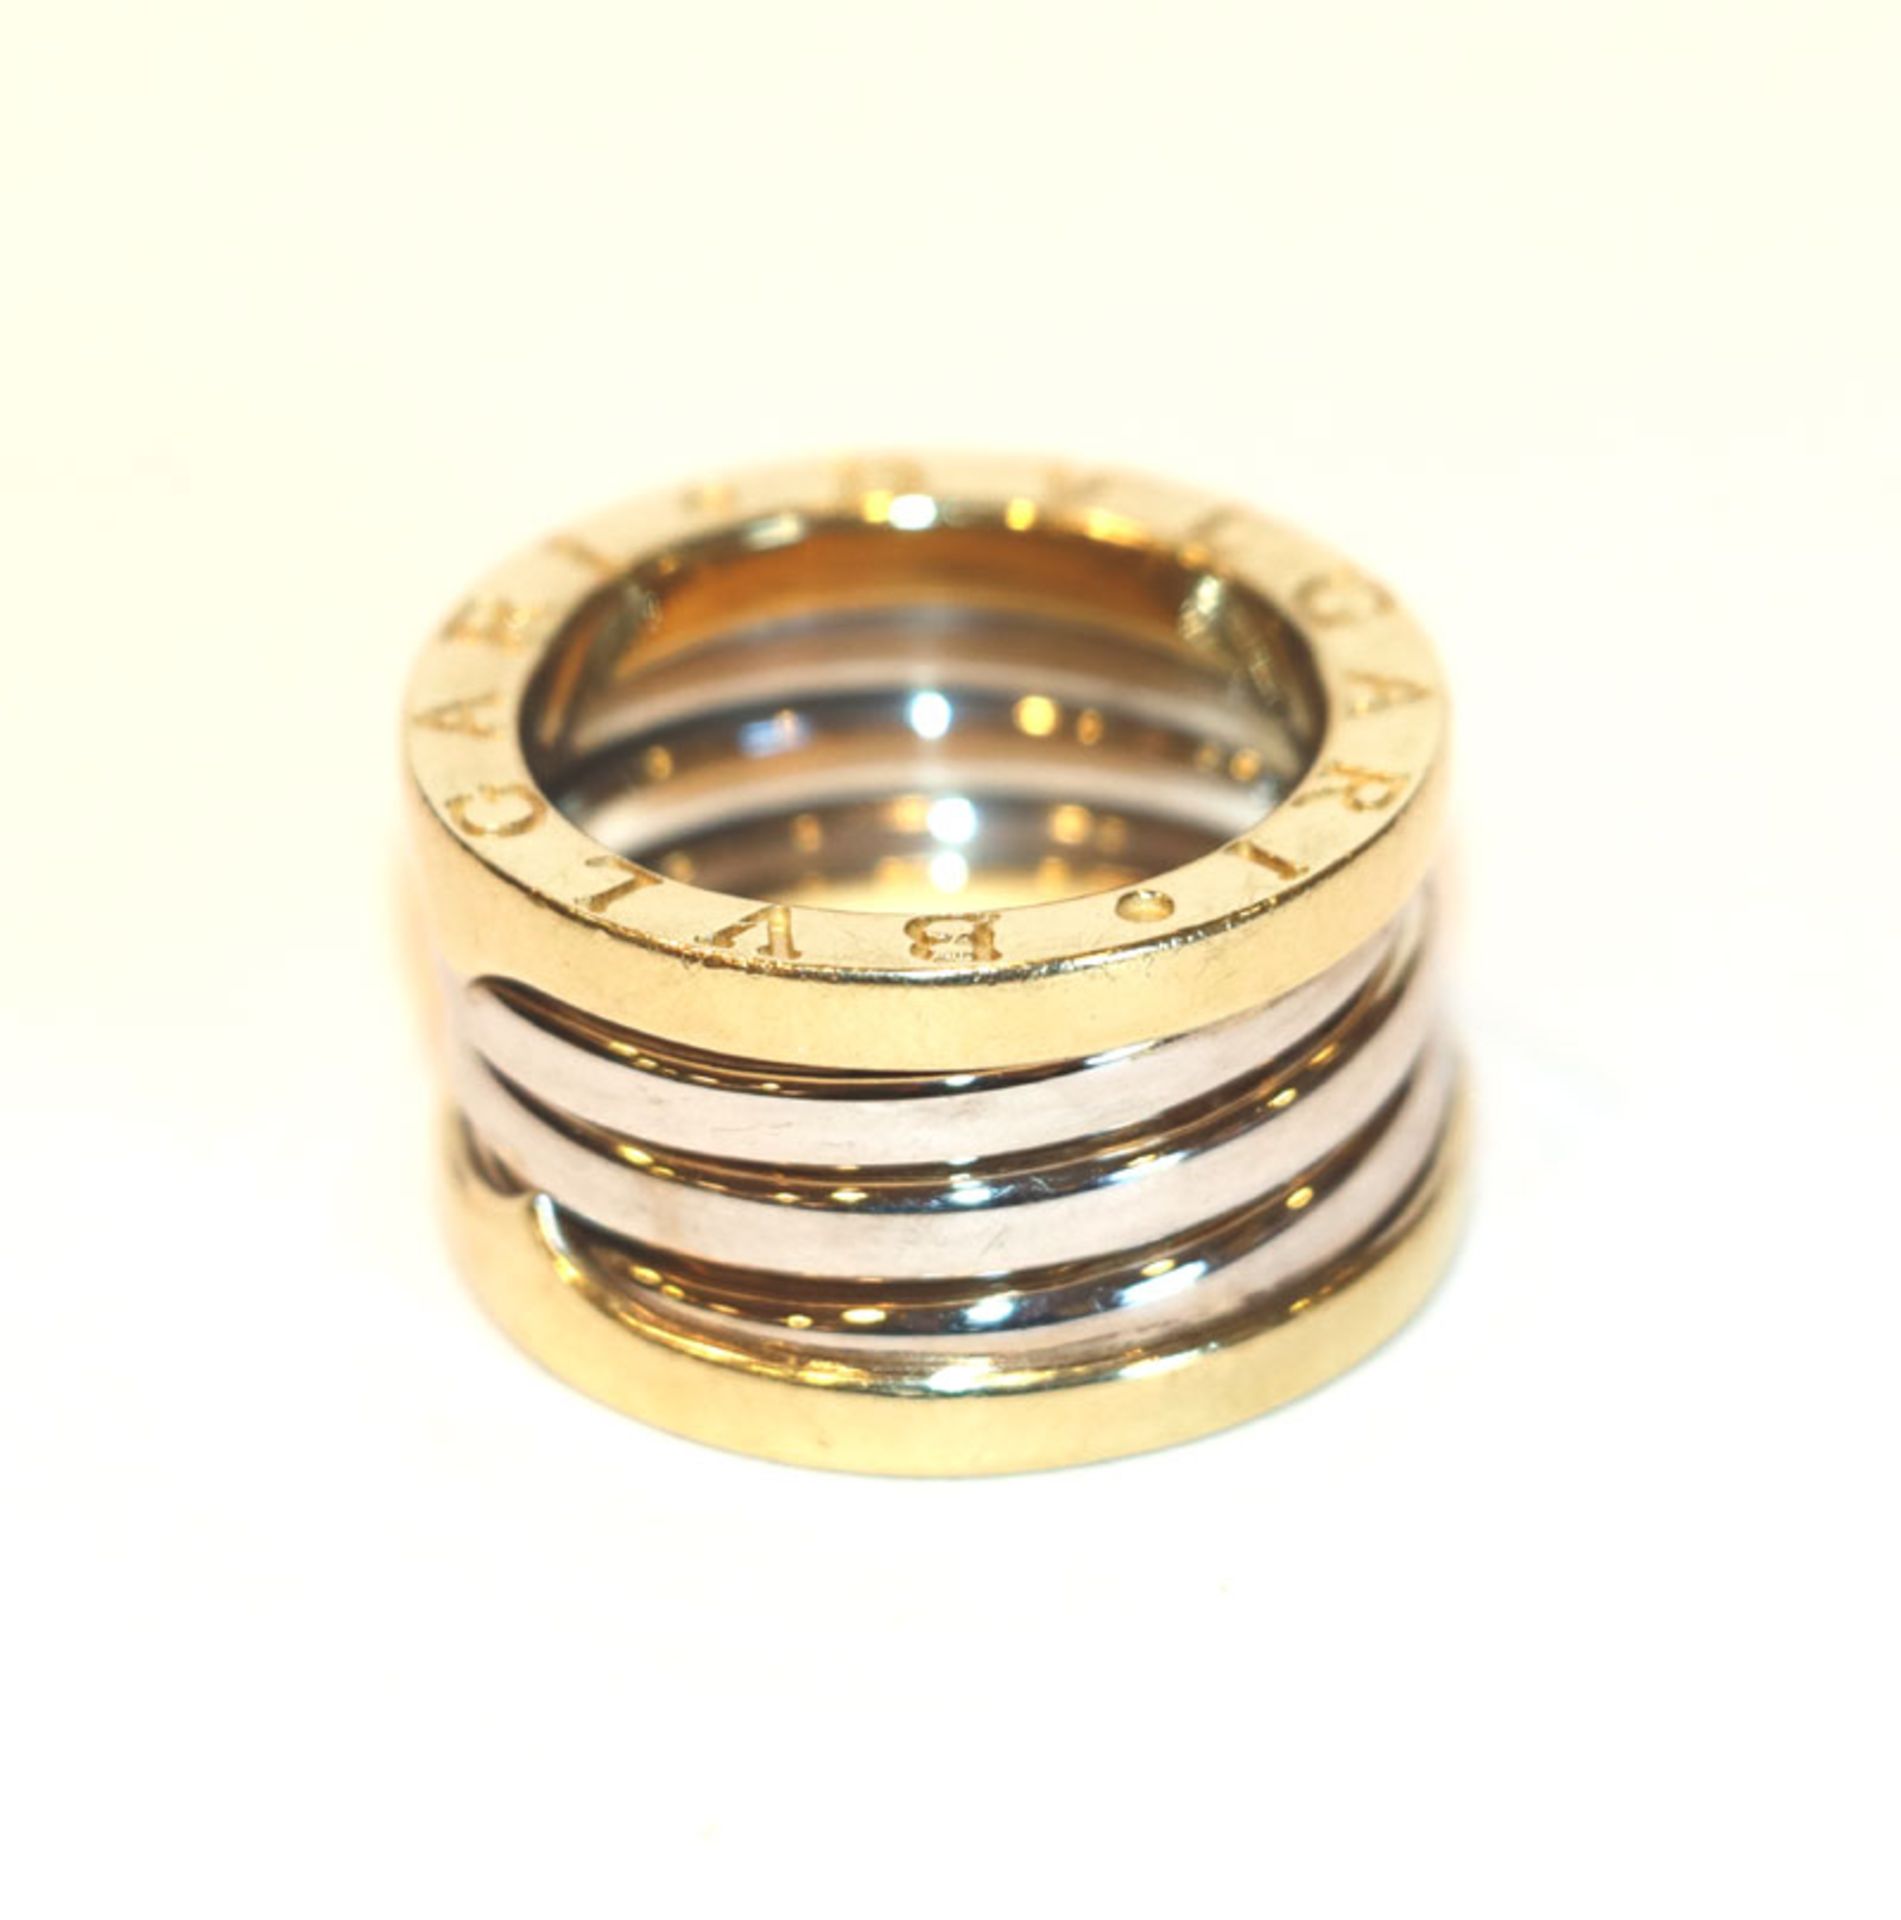 18 k Gelb- und Weißgold, (geprüft), Bulgari Ring mit seitlichem Firmenschriftzug, 9 gr., Gr. 52